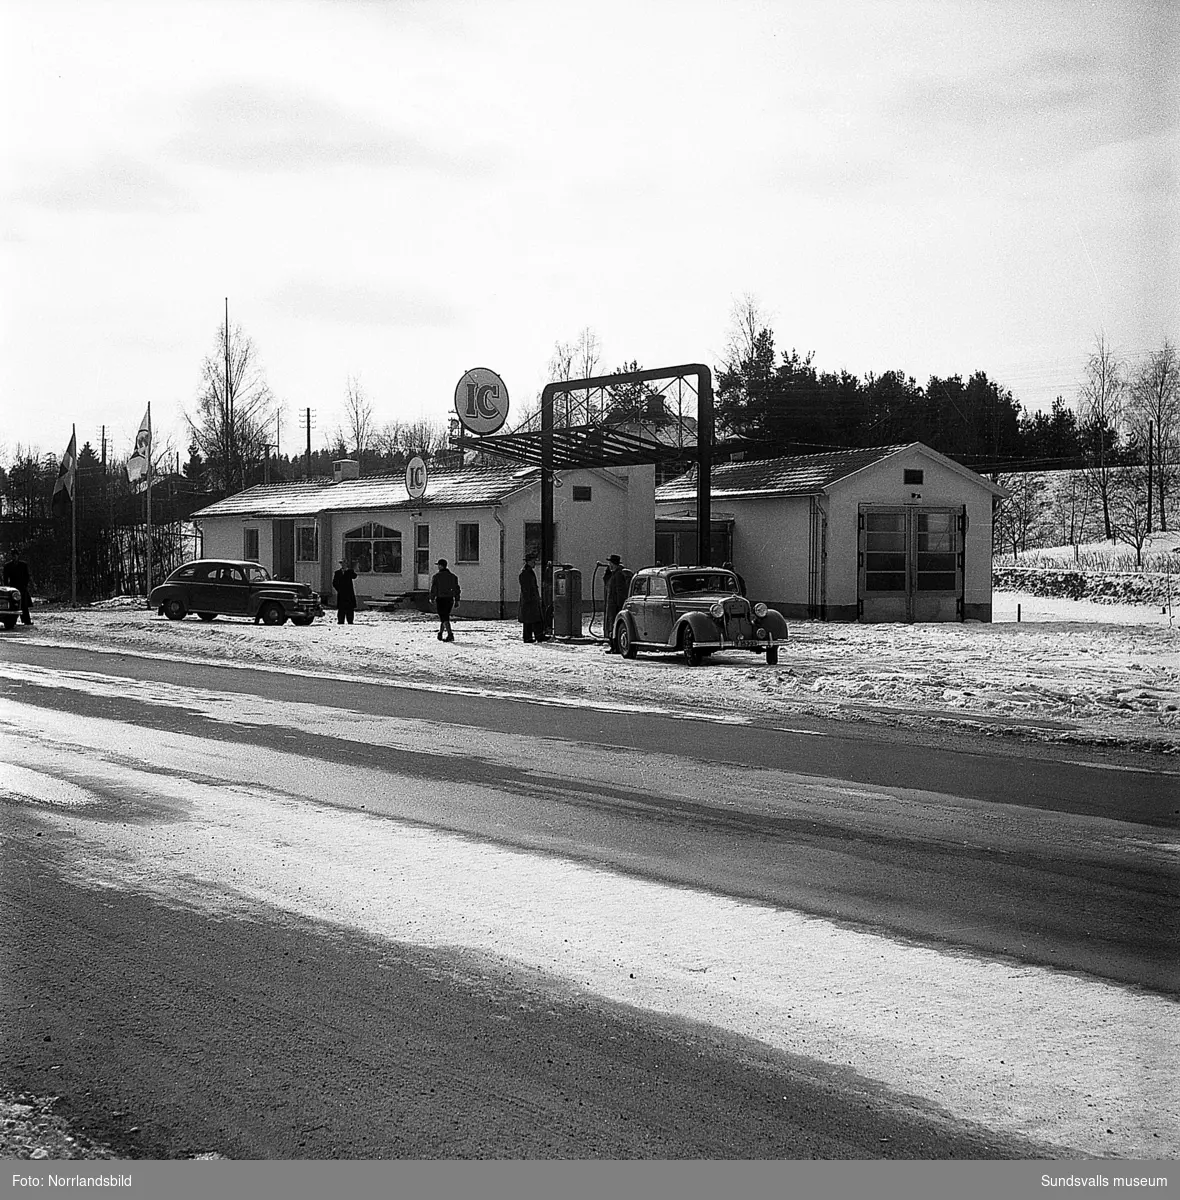 IC Motell i Kvissleby (OK) var Sveriges första motell, startades 1952. Bilder från butik, verkstad och exteriörbilder.